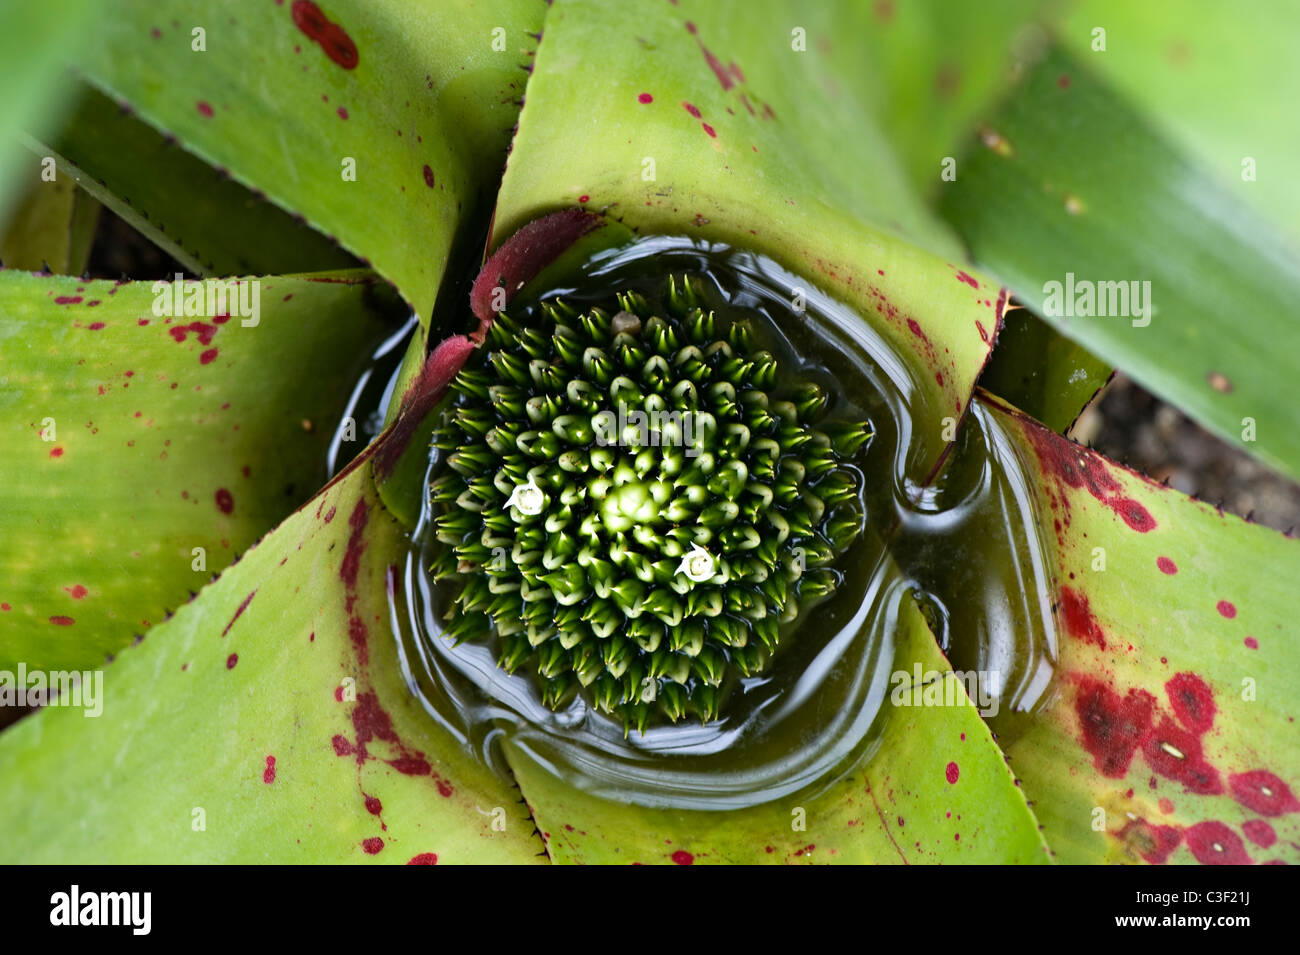 Close-up image of a Neoregelia burle-marxii flower Stock Photo